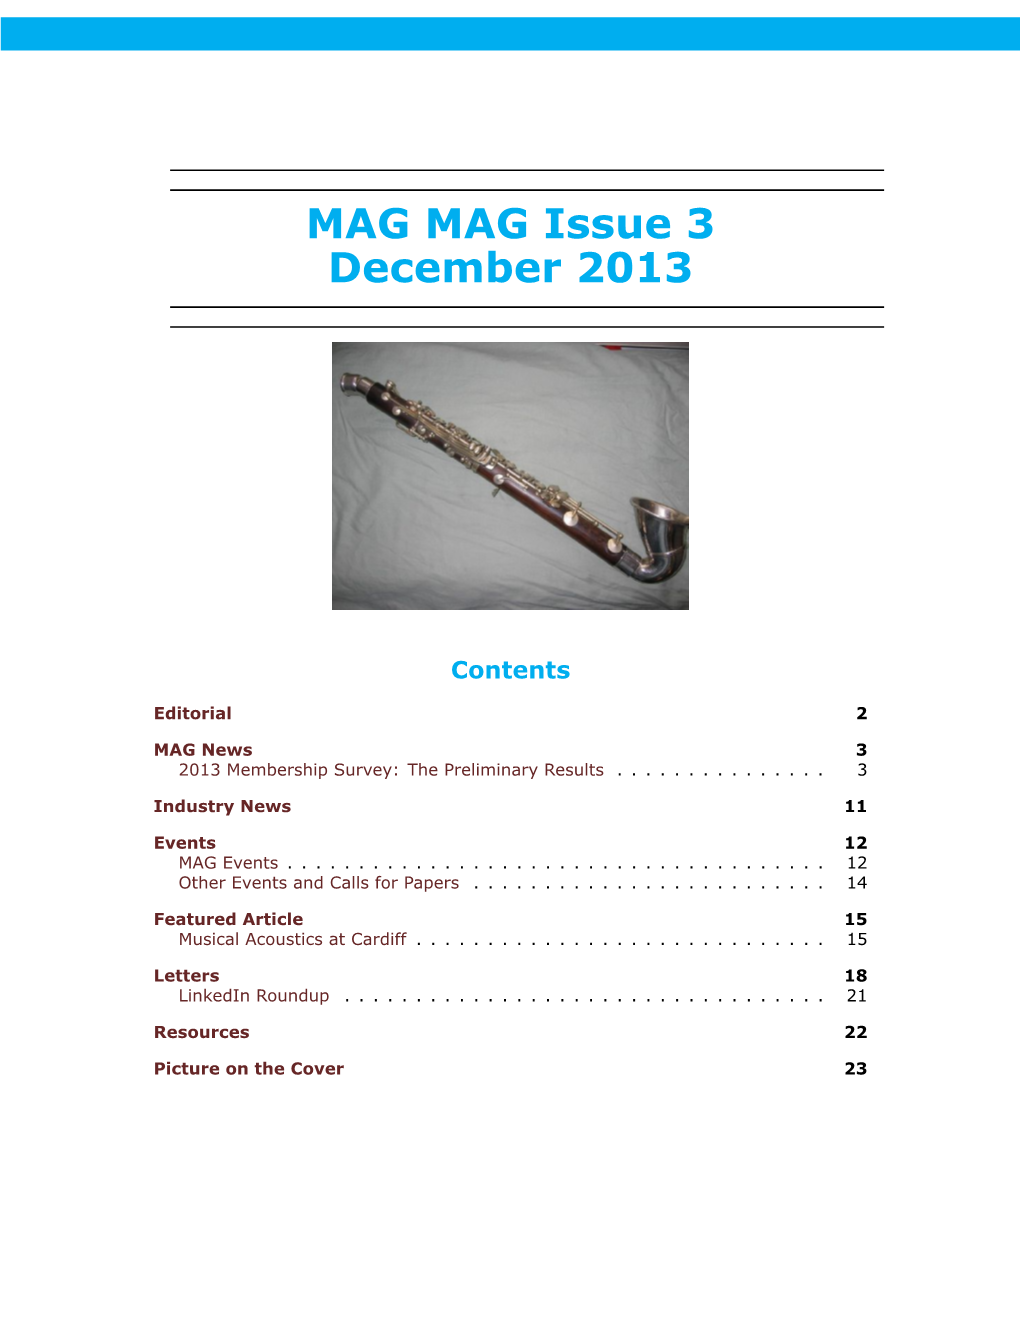 MAG MAG Issue 3 December 2013